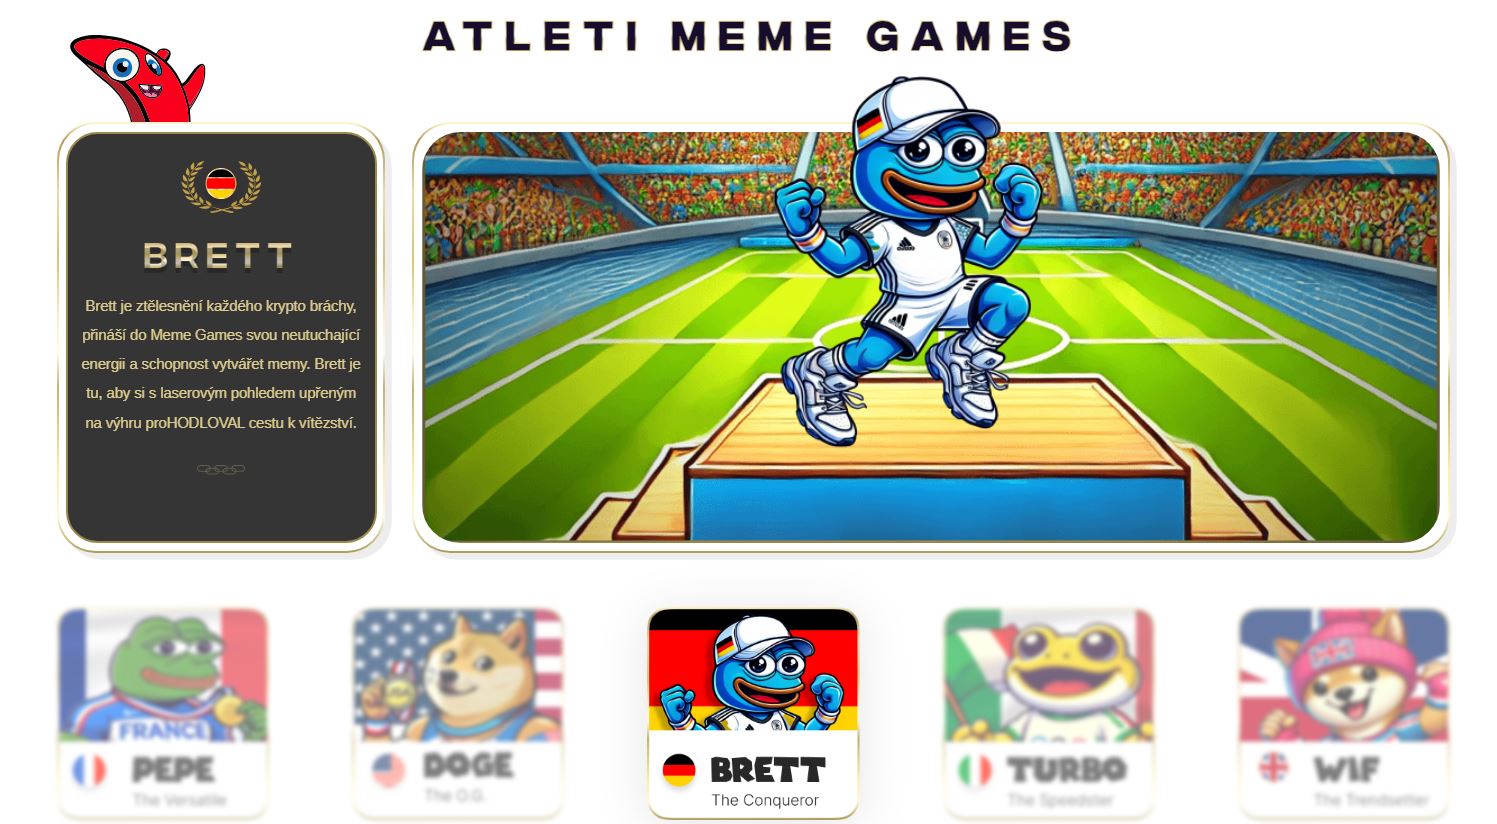 Díky meme atletům se může stát předprodej kryptoměn Meme Games velmi vyhledávaným